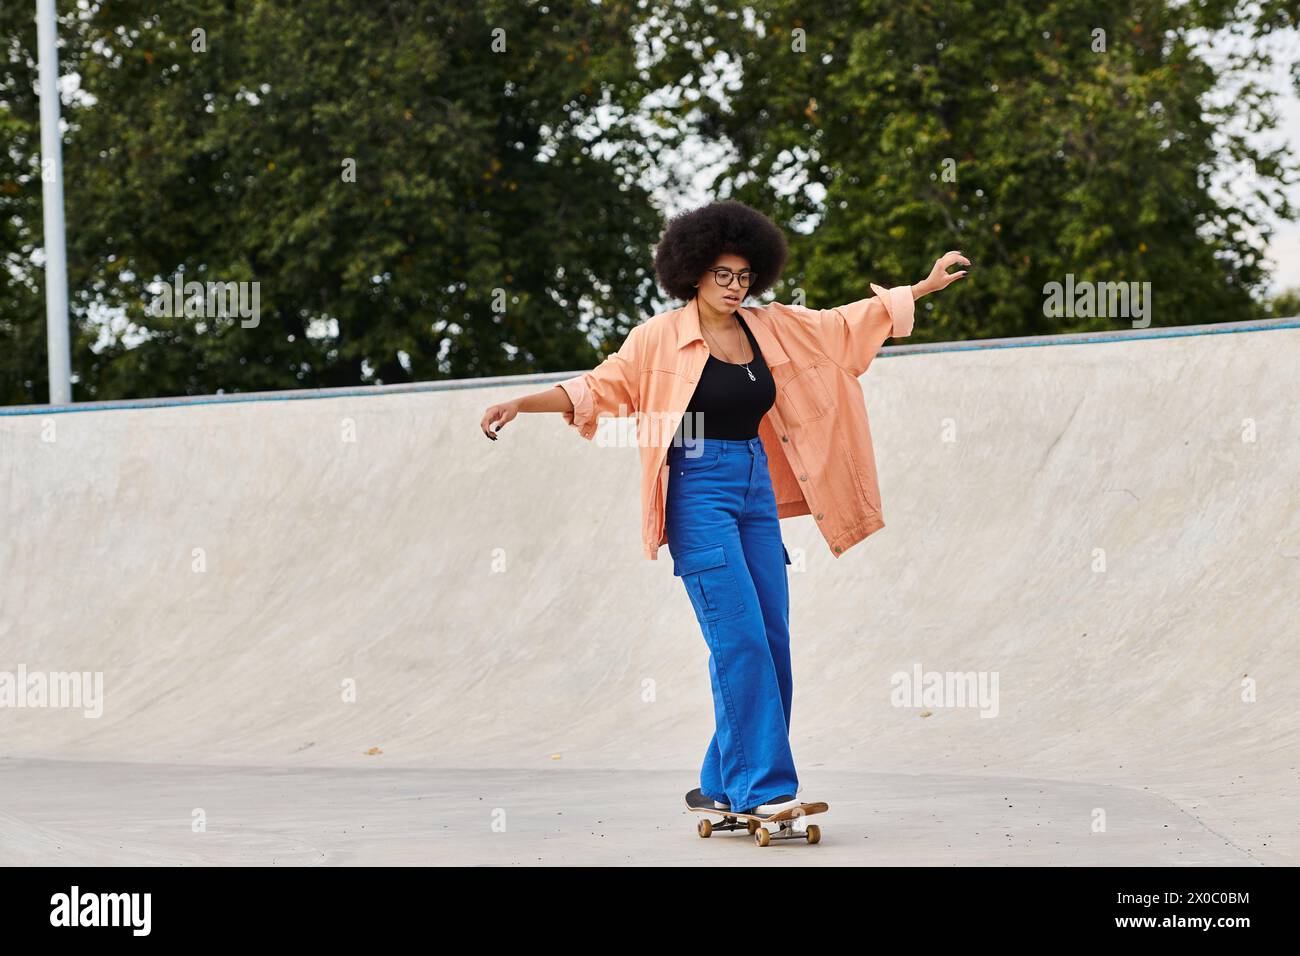 Una joven afroamericana con el pelo rizado monta con confianza un monopatín en un vibrante parque de skate. Foto de stock